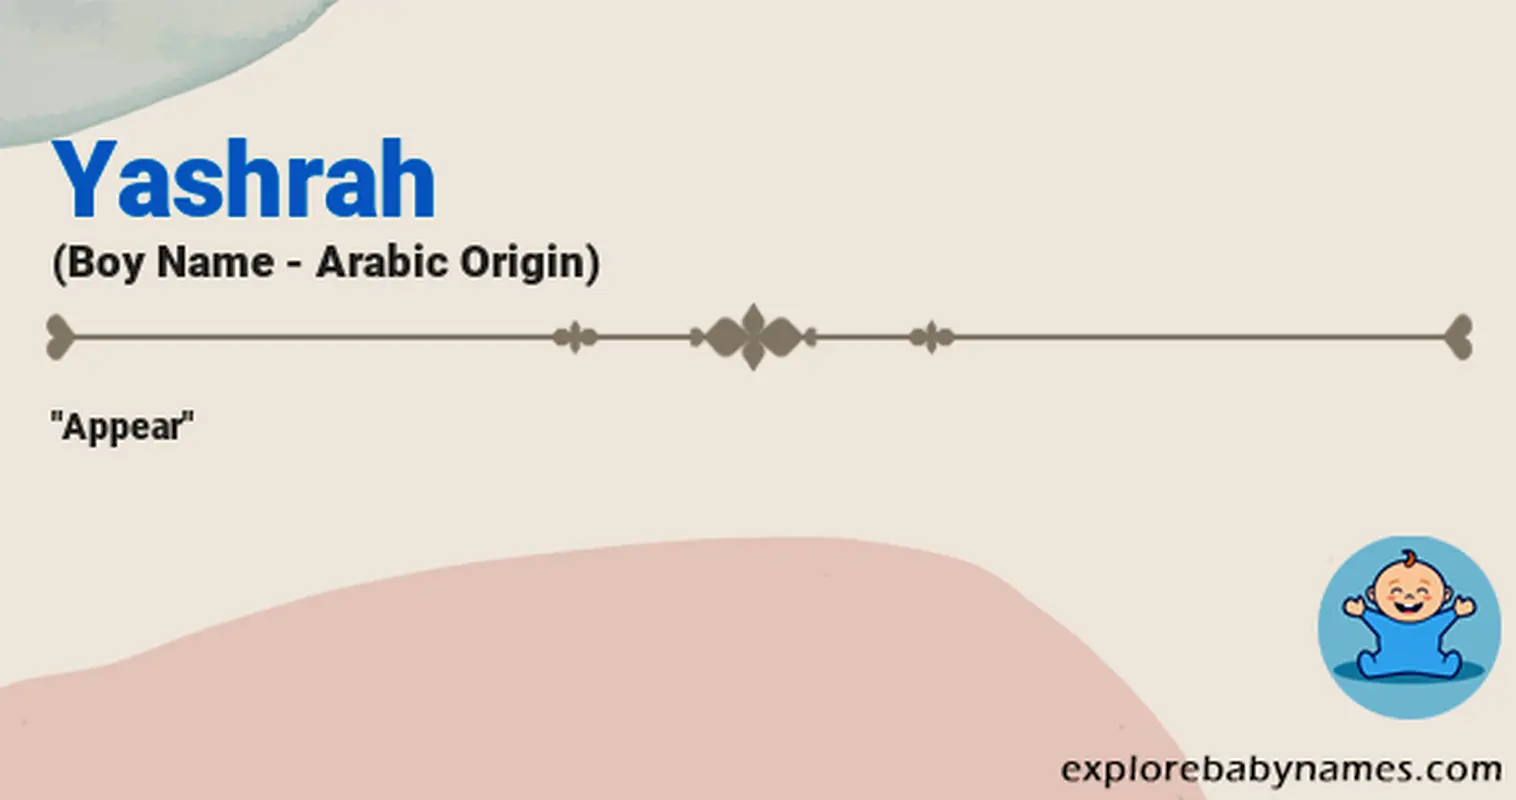 Meaning of Yashrah